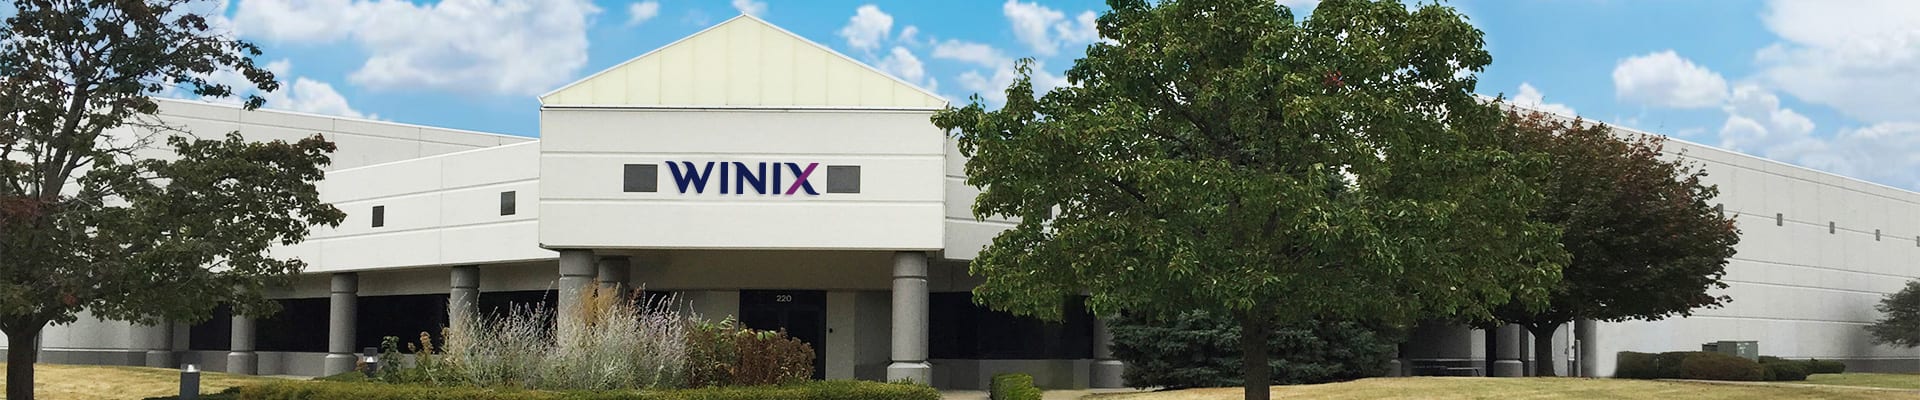 Winix HQ in Vernon Hills, Illinois